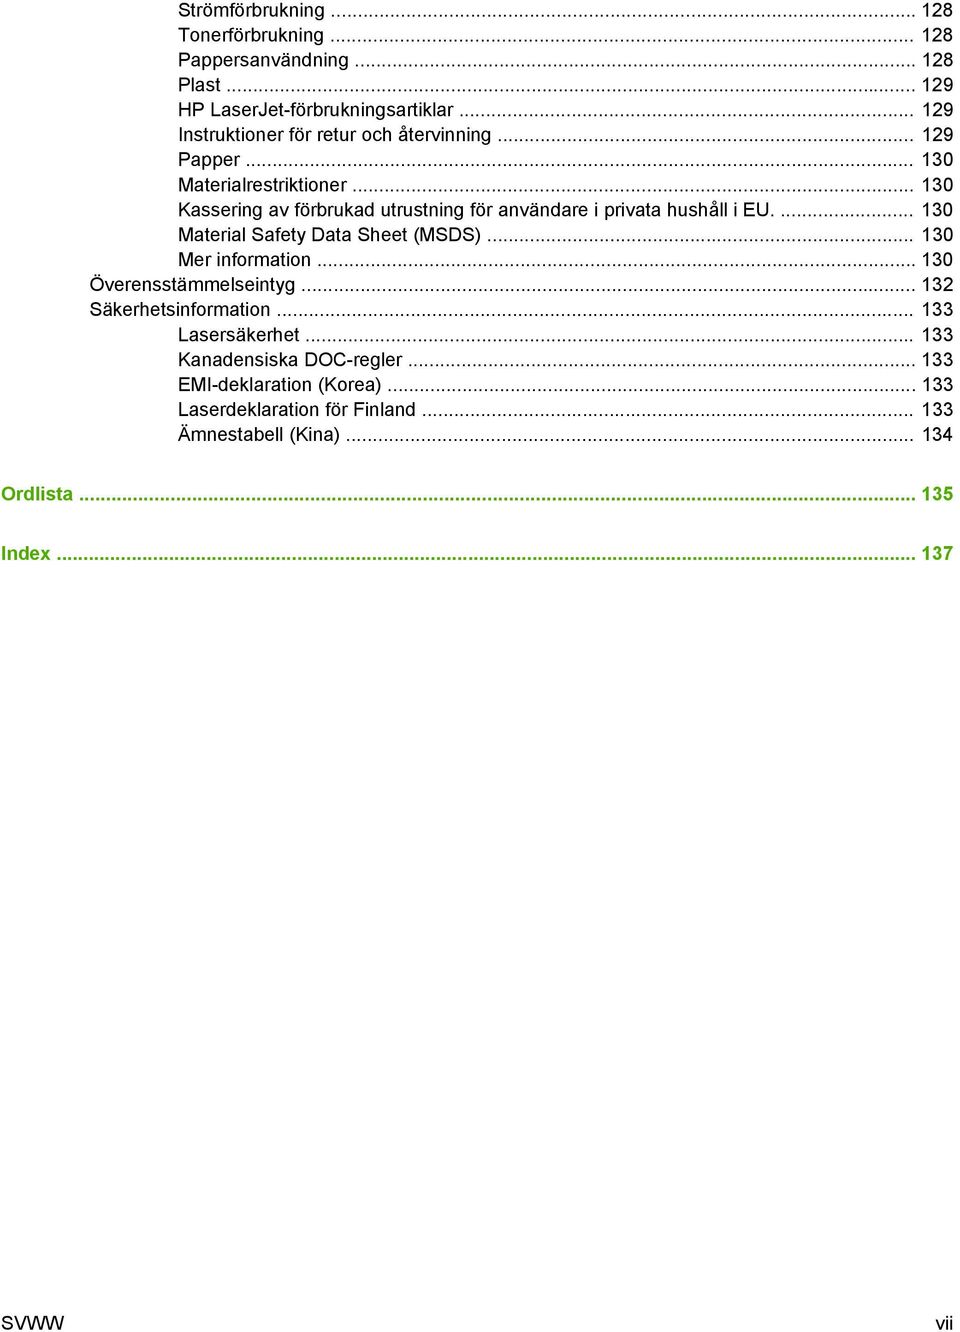 .. 130 Kassering av förbrukad utrustning för användare i privata hushåll i EU.... 130 Material Safety Data Sheet (MSDS)... 130 Mer information.